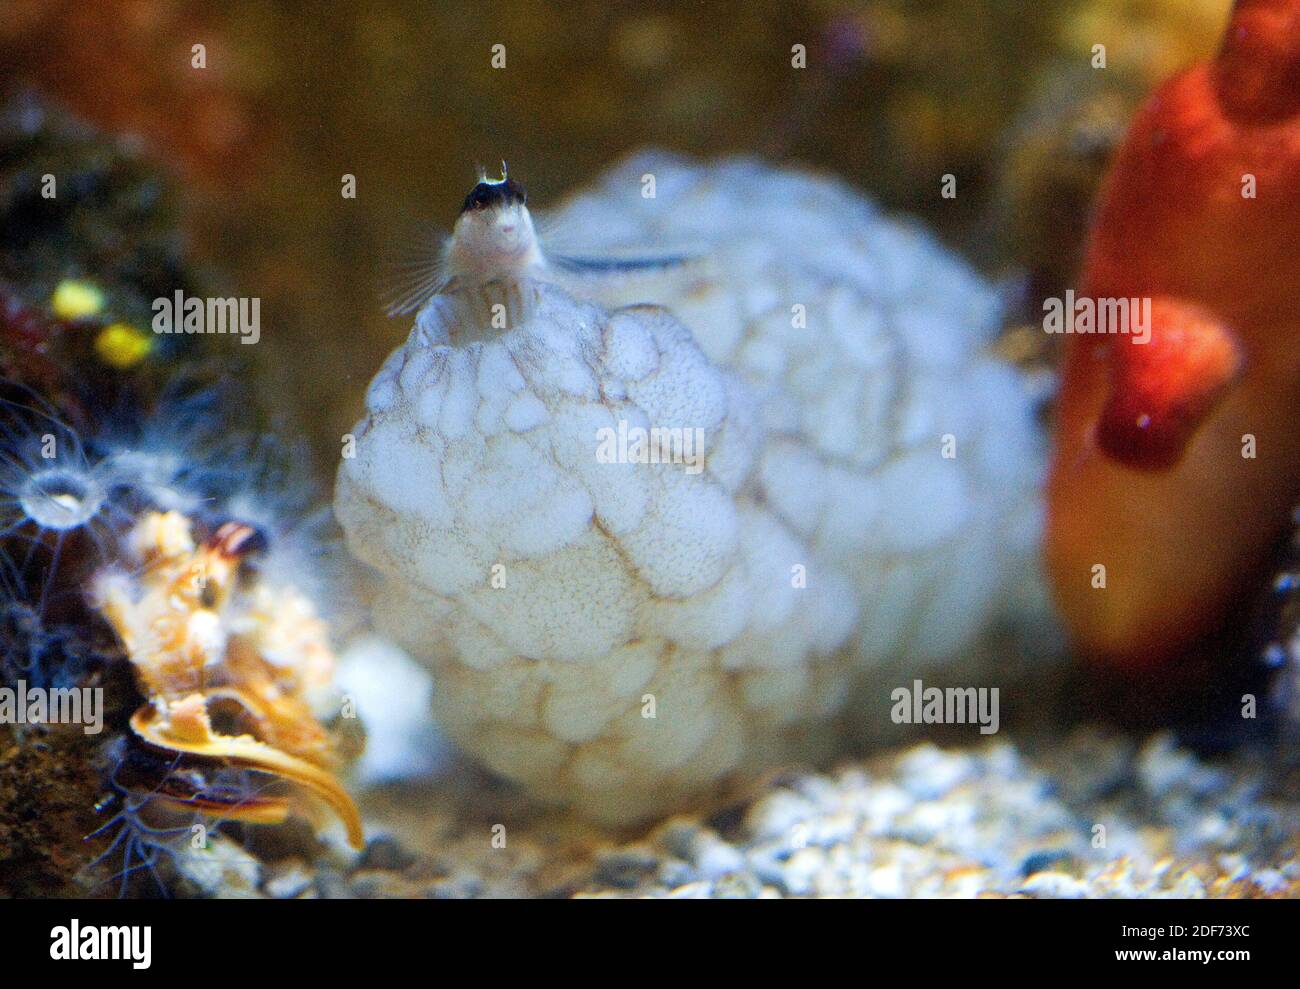 Der weiße Meersquirt (Phallusia mammillata) ist ein Filterascidiacea, der im Mittelmeer und im nordöstlichen Atlantik beheimatet ist. Rechts eine andere Stockfoto